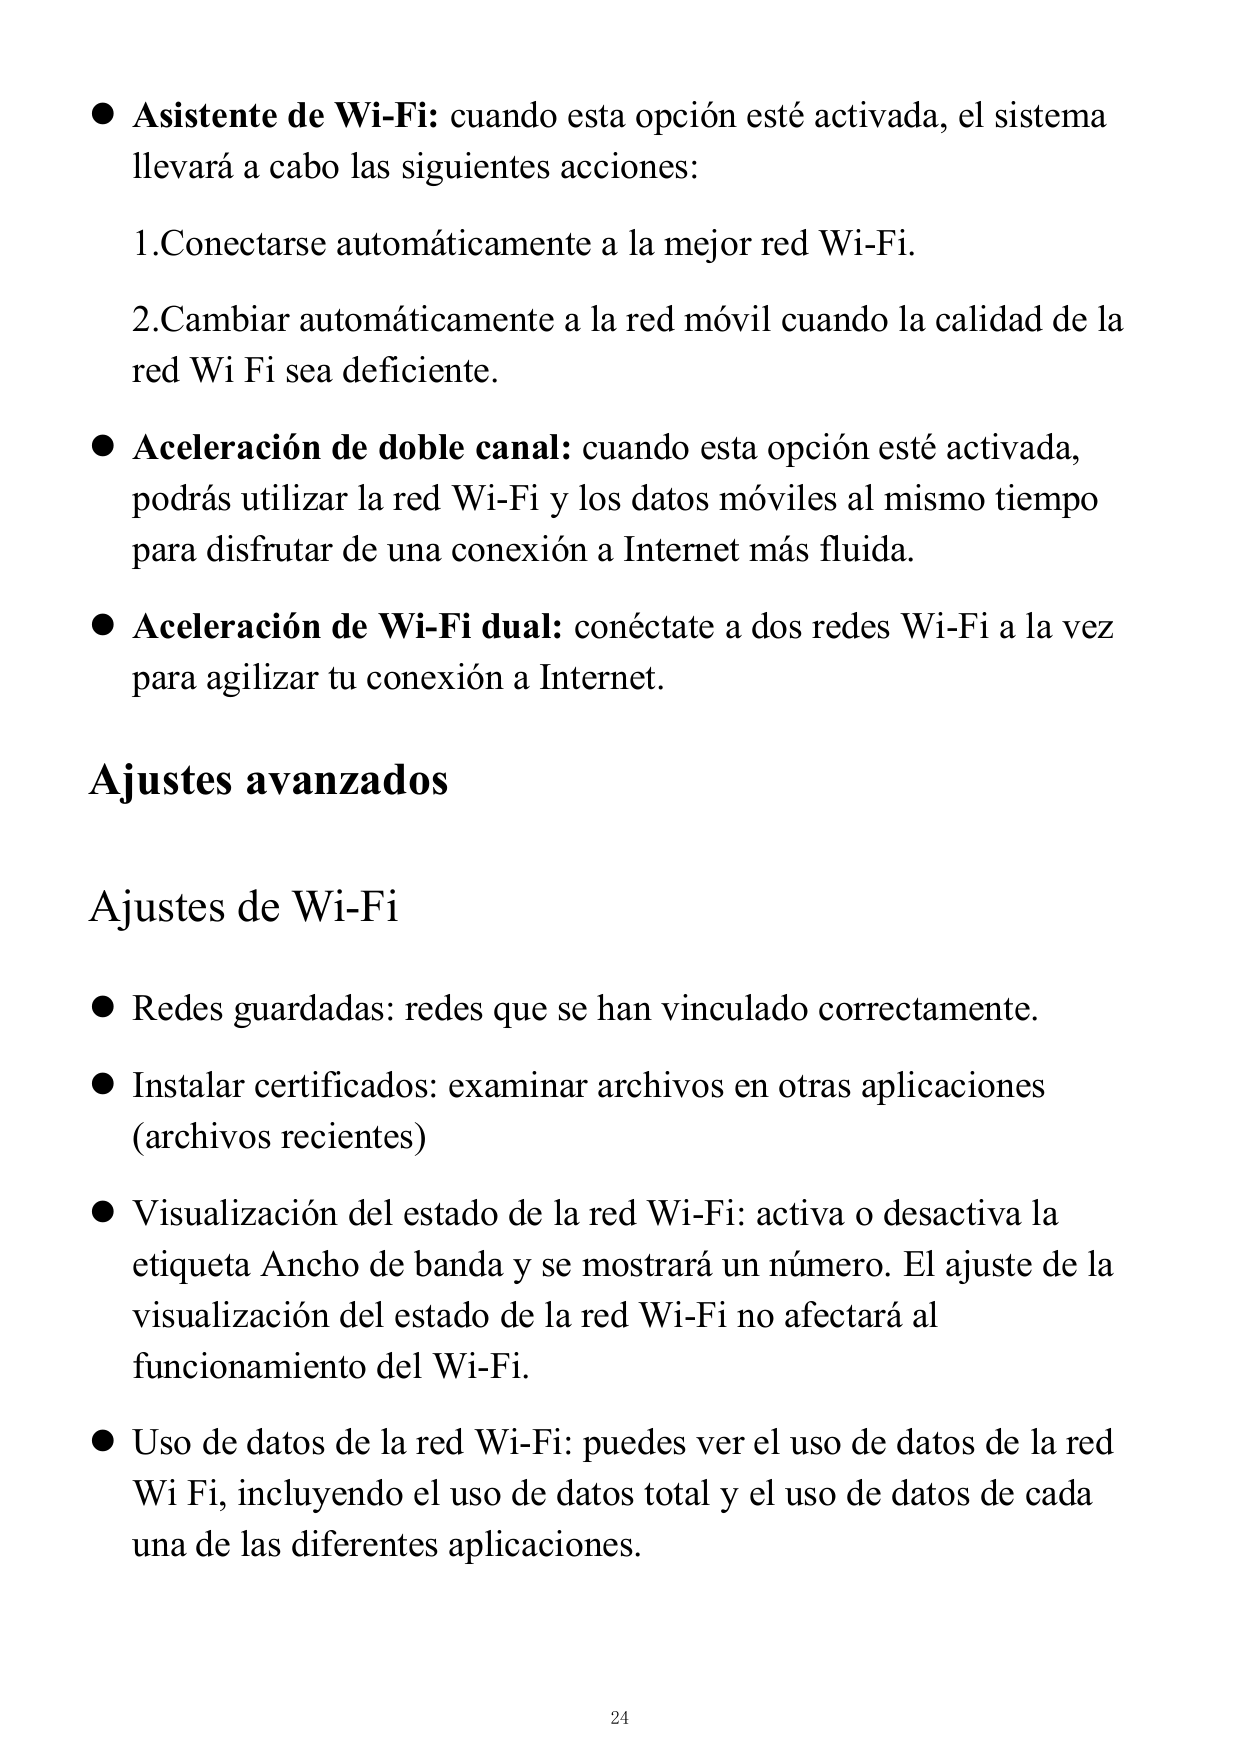  Asistente de Wi-Fi: cuando esta opción esté activada, el sistemallevará a cabo las siguientes acciones:1.Conectarse automática